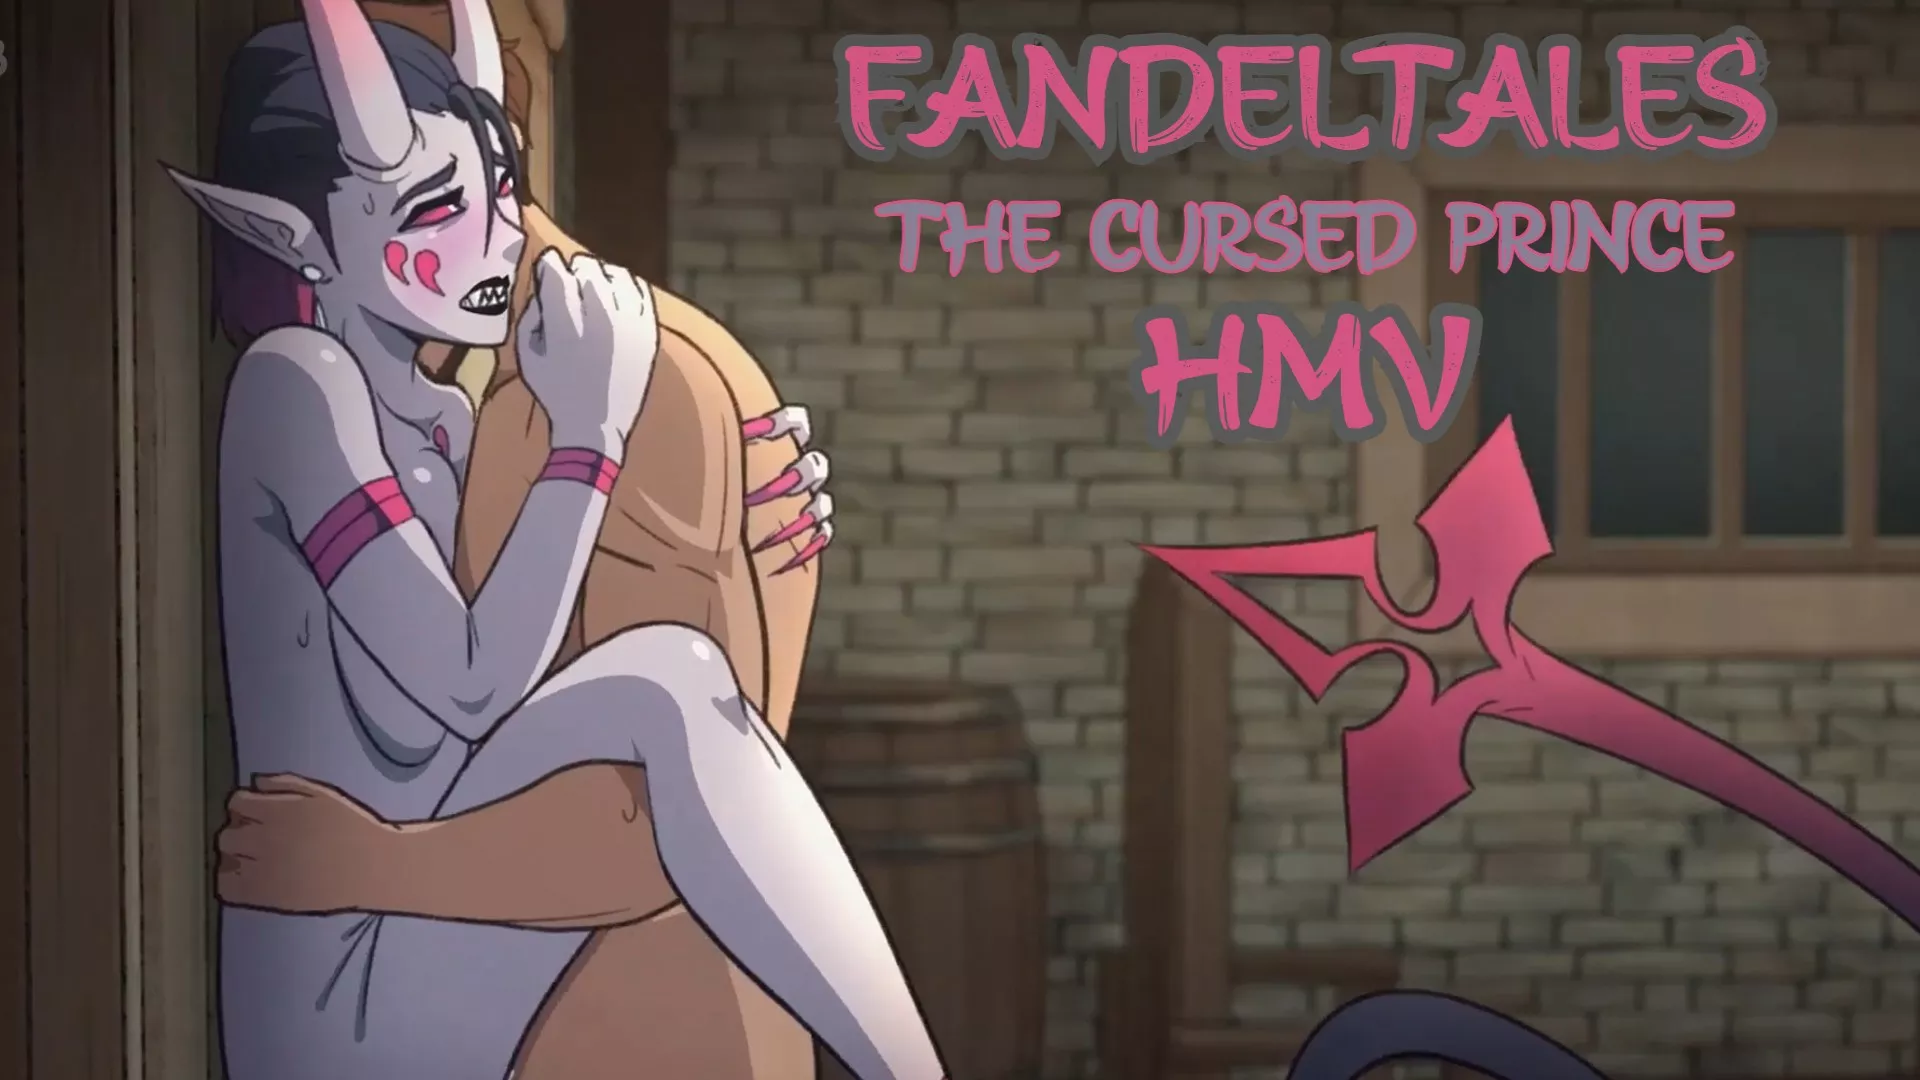 Fandel tales the cursed prince by derpixon